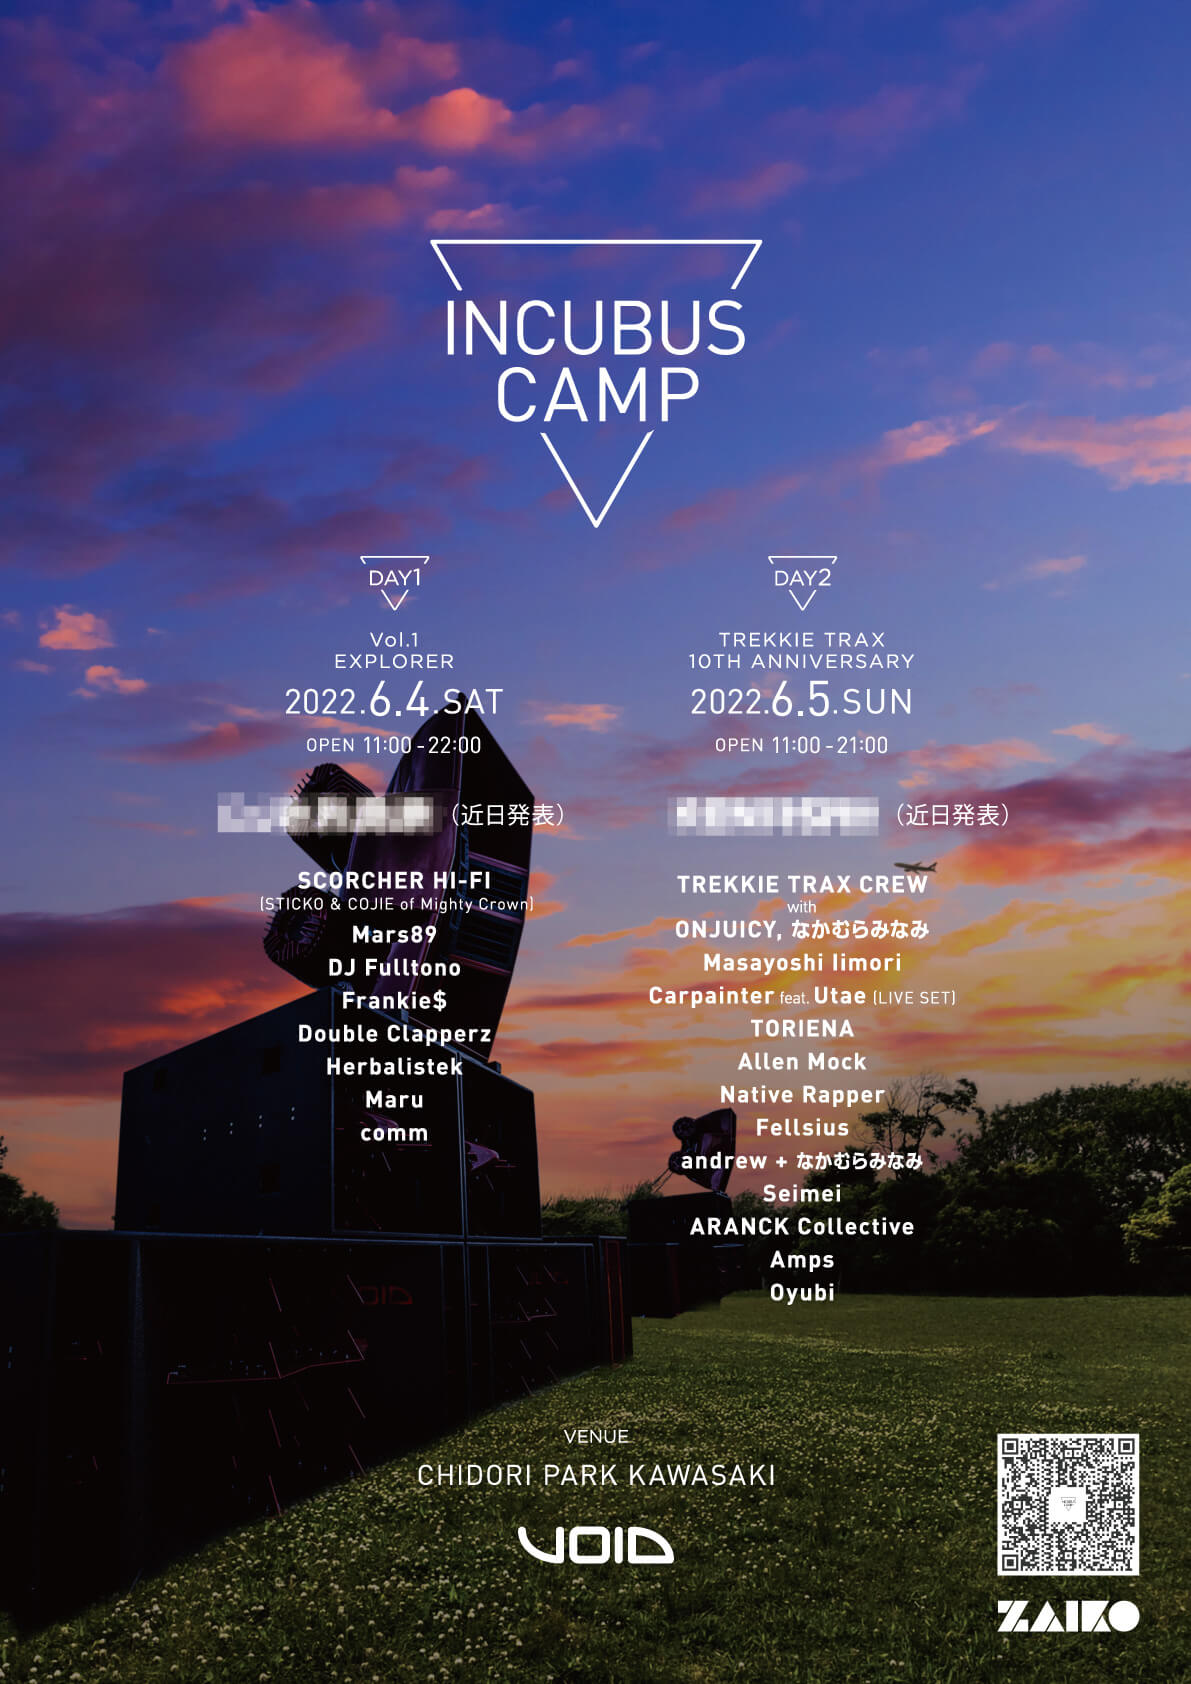 世界最高峰のサウンドシステム「Void Acoustics INCUBUS」を主役にした野外フェス＜INCUBUS CAMP＞が川崎・ちどり公園で開催決定 music220421_incubuscamp-04